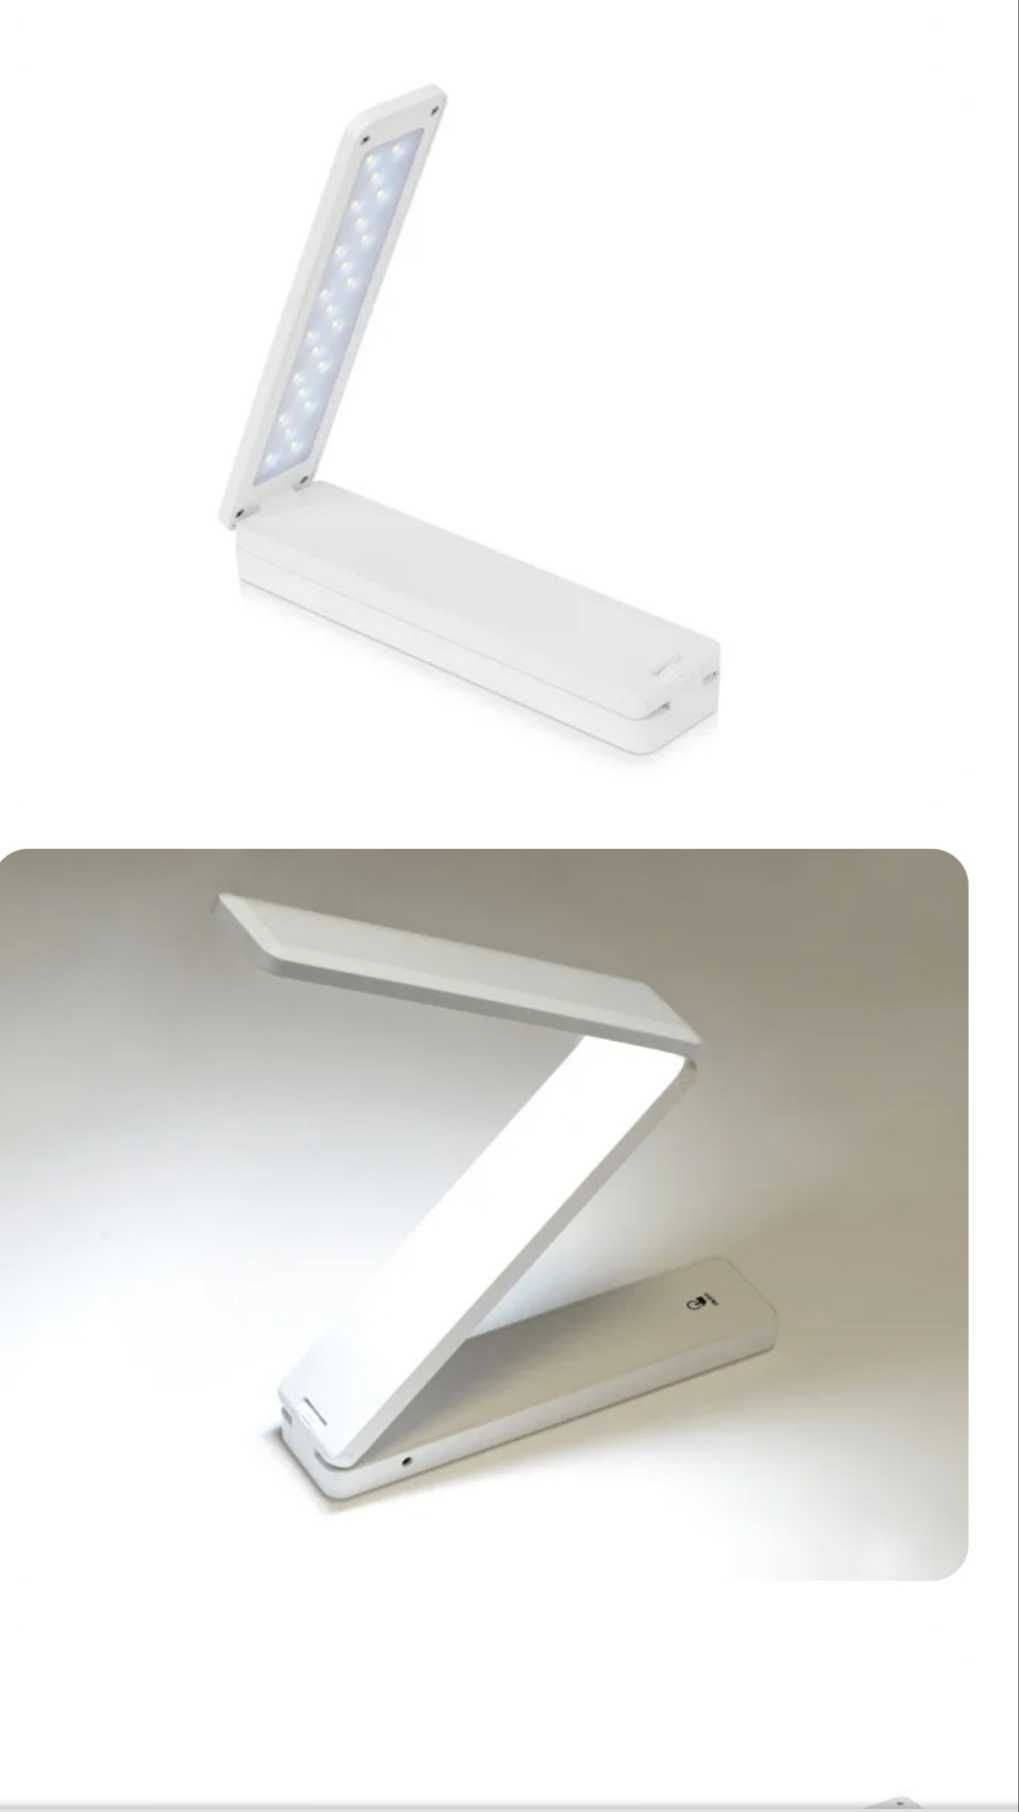 Складывающаяся настольная LED лампа Stack, белая